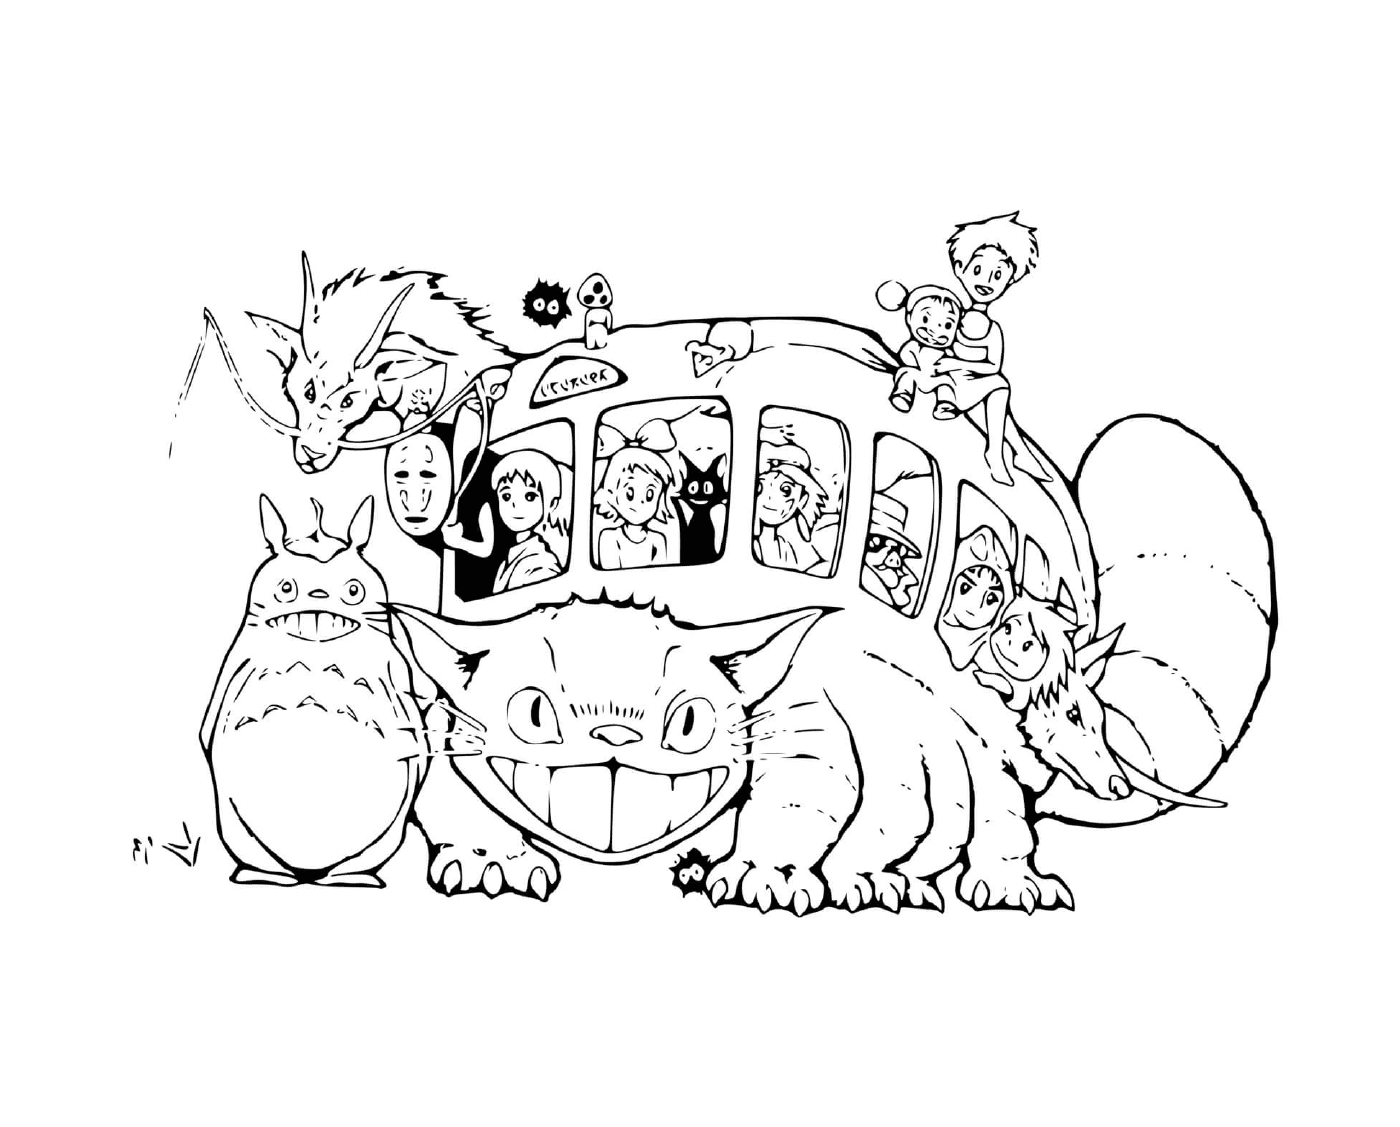  Bus a forma di gatto dello Studio Ghibli 